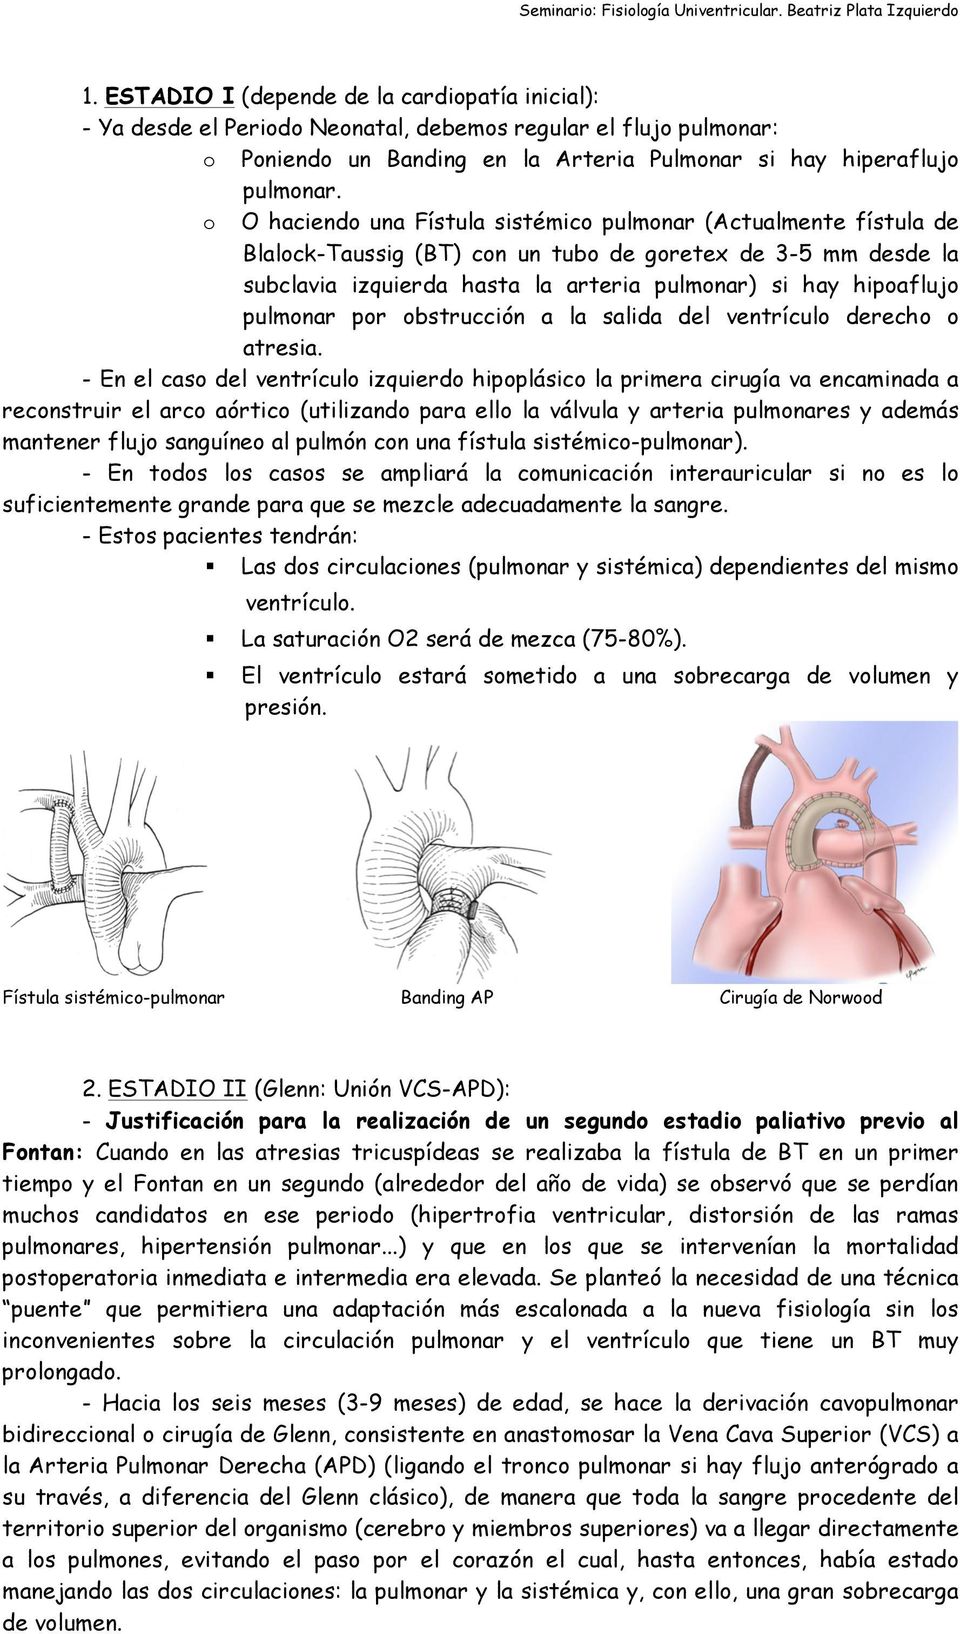 pulmonar por obstrucción a la salida del ventrículo derecho o atresia.